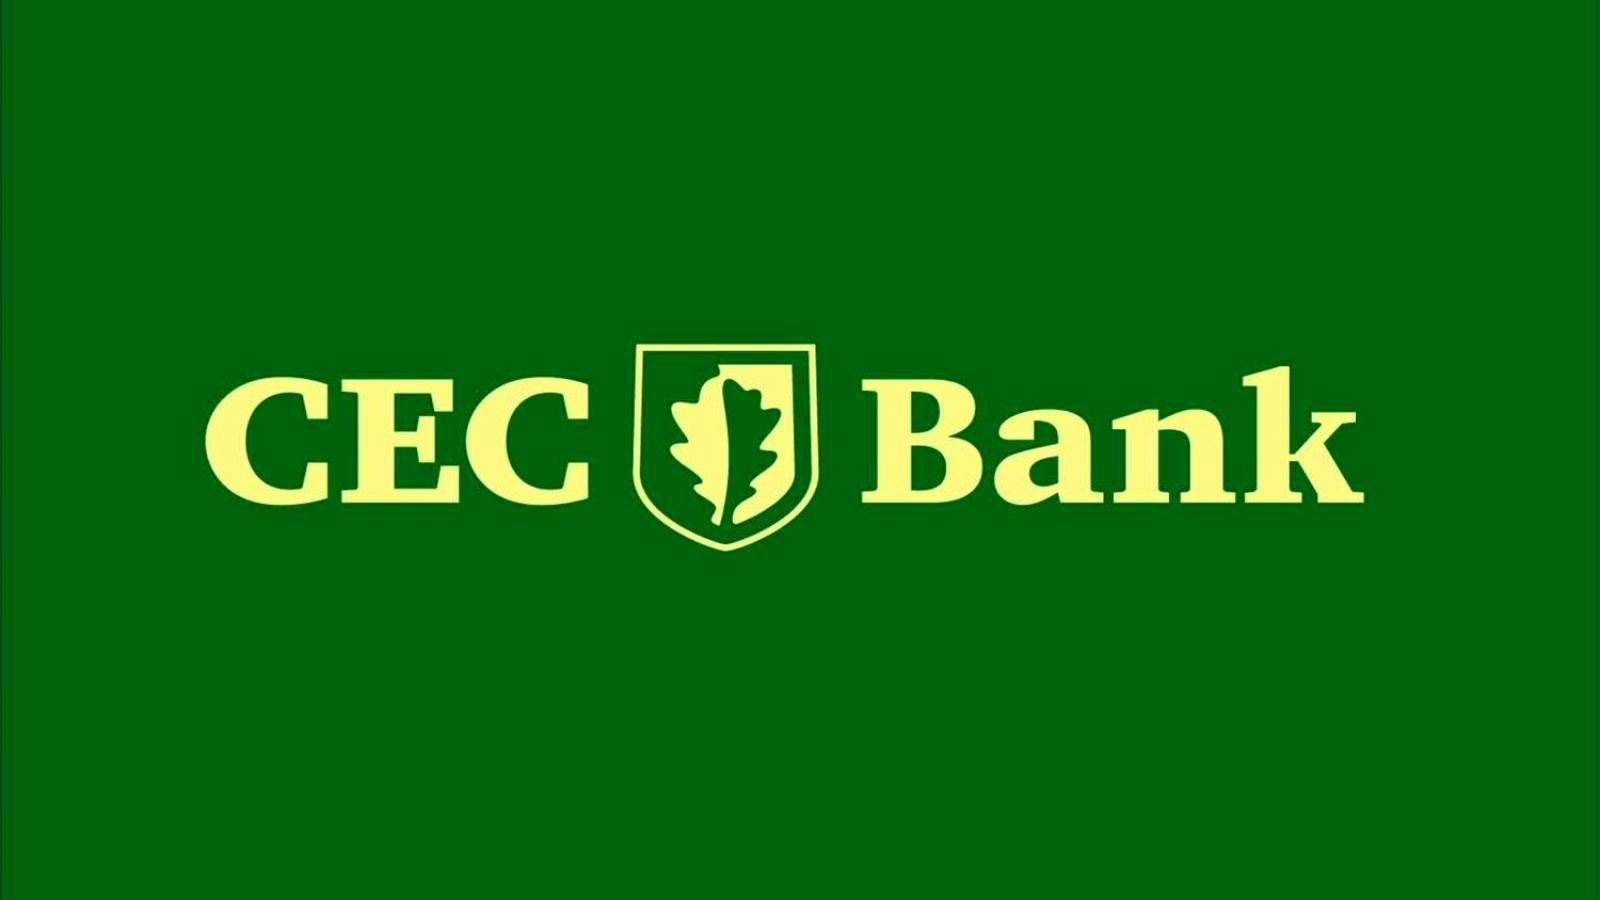 CEC Banca LAST MINUTE Annuncio Decisione Clienti